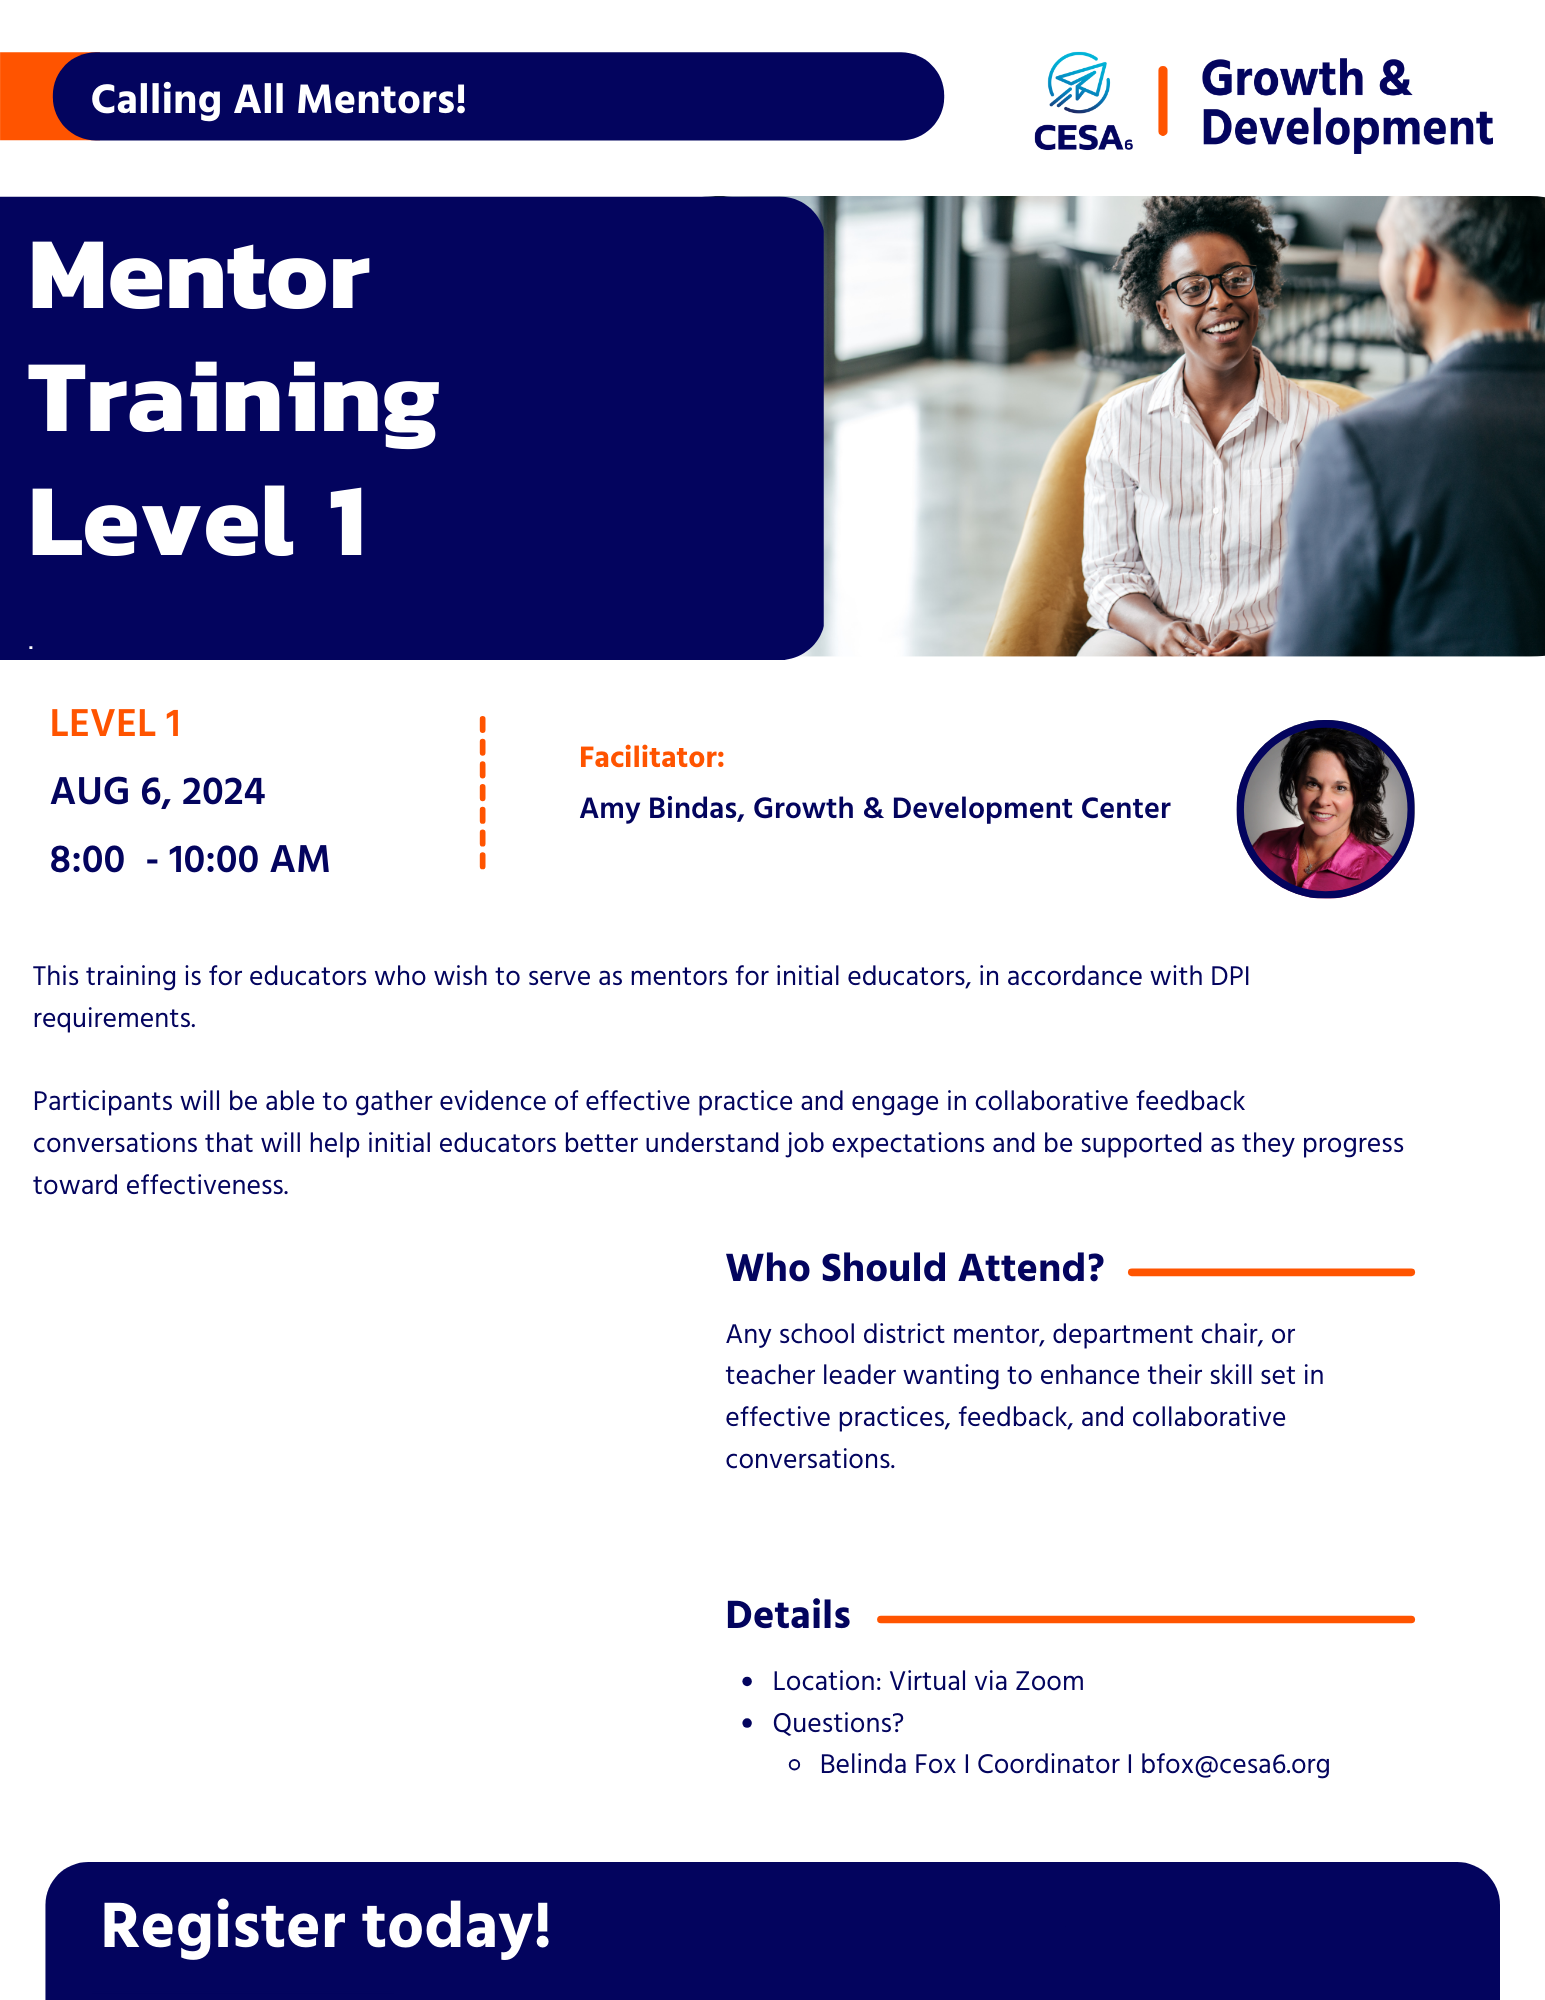 Register for Mentor Training Level 1